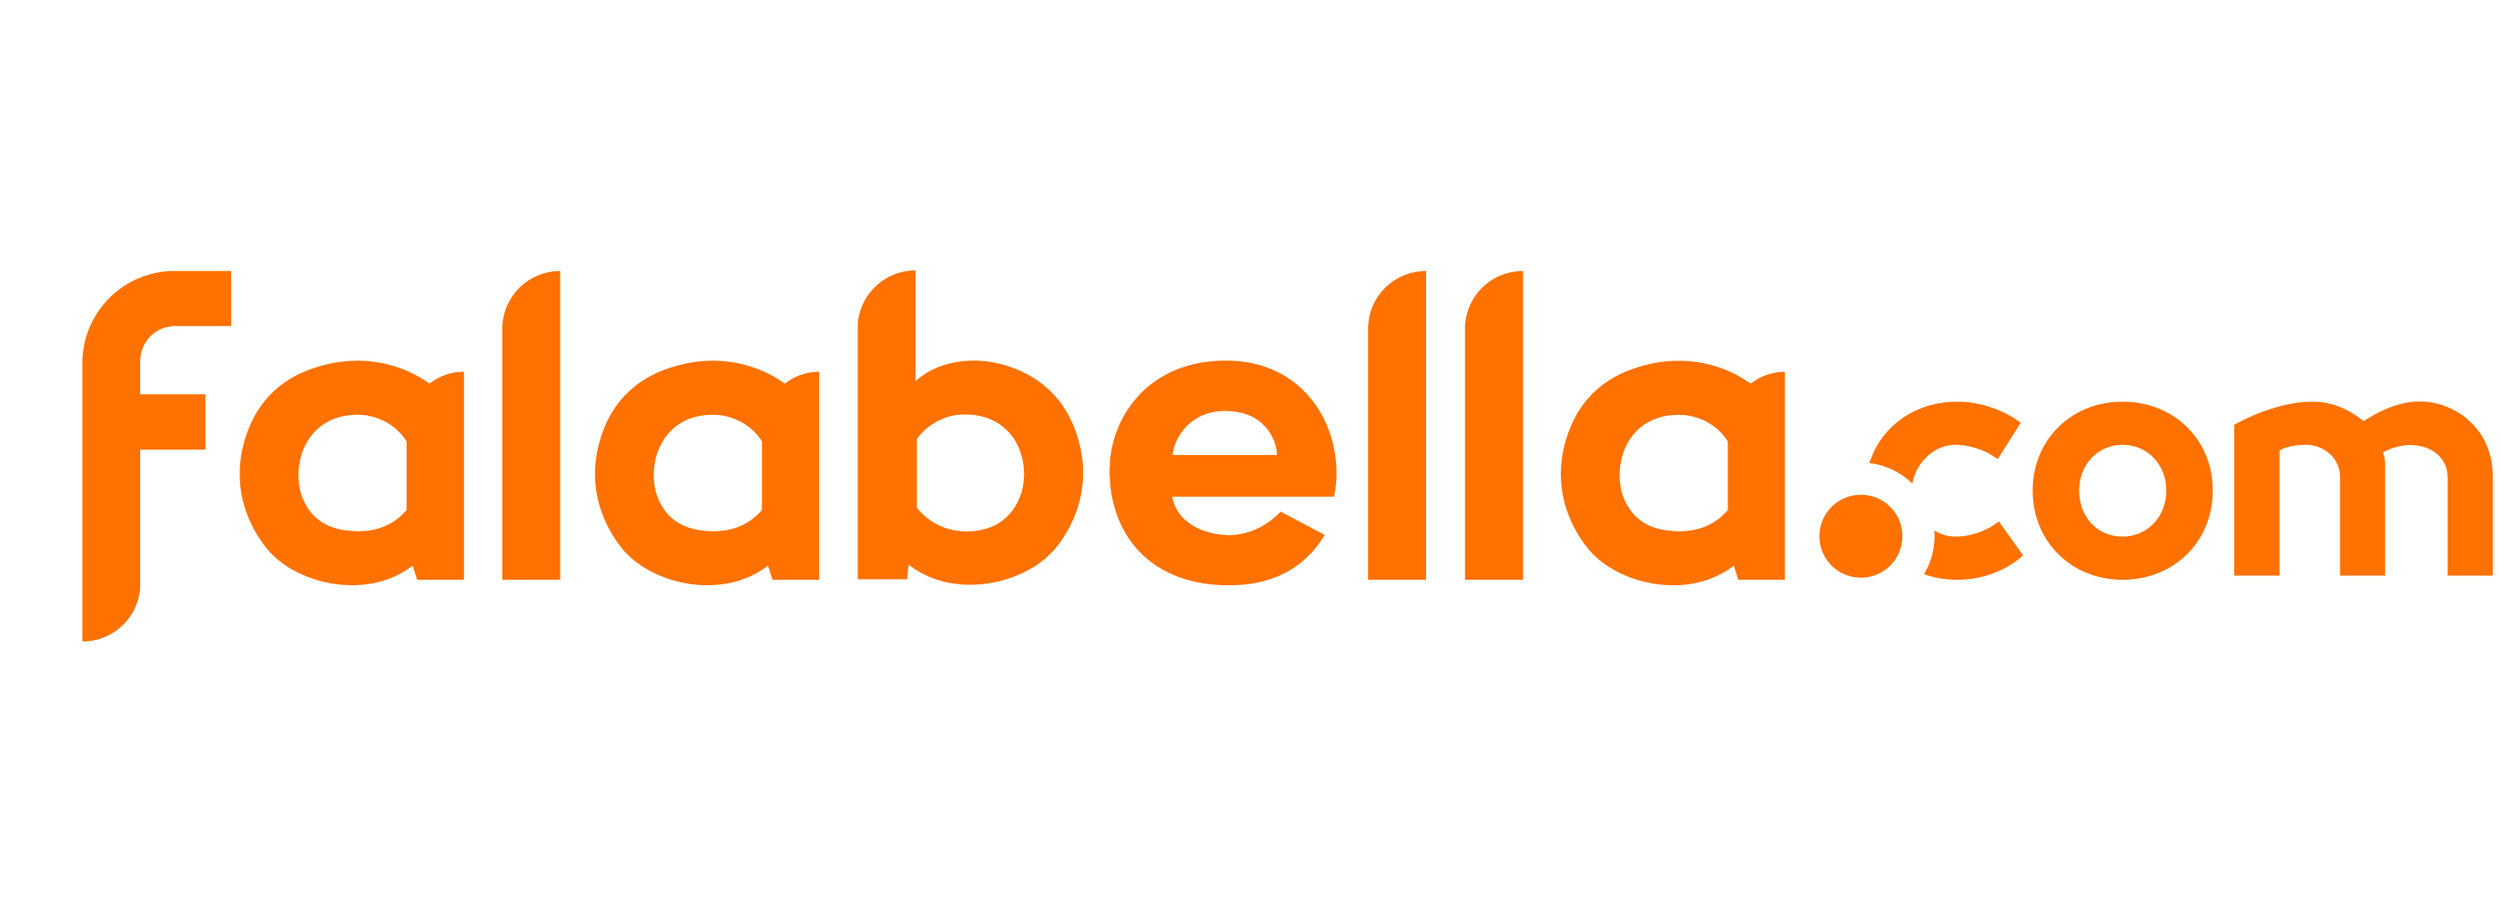 11-falabella-com.png